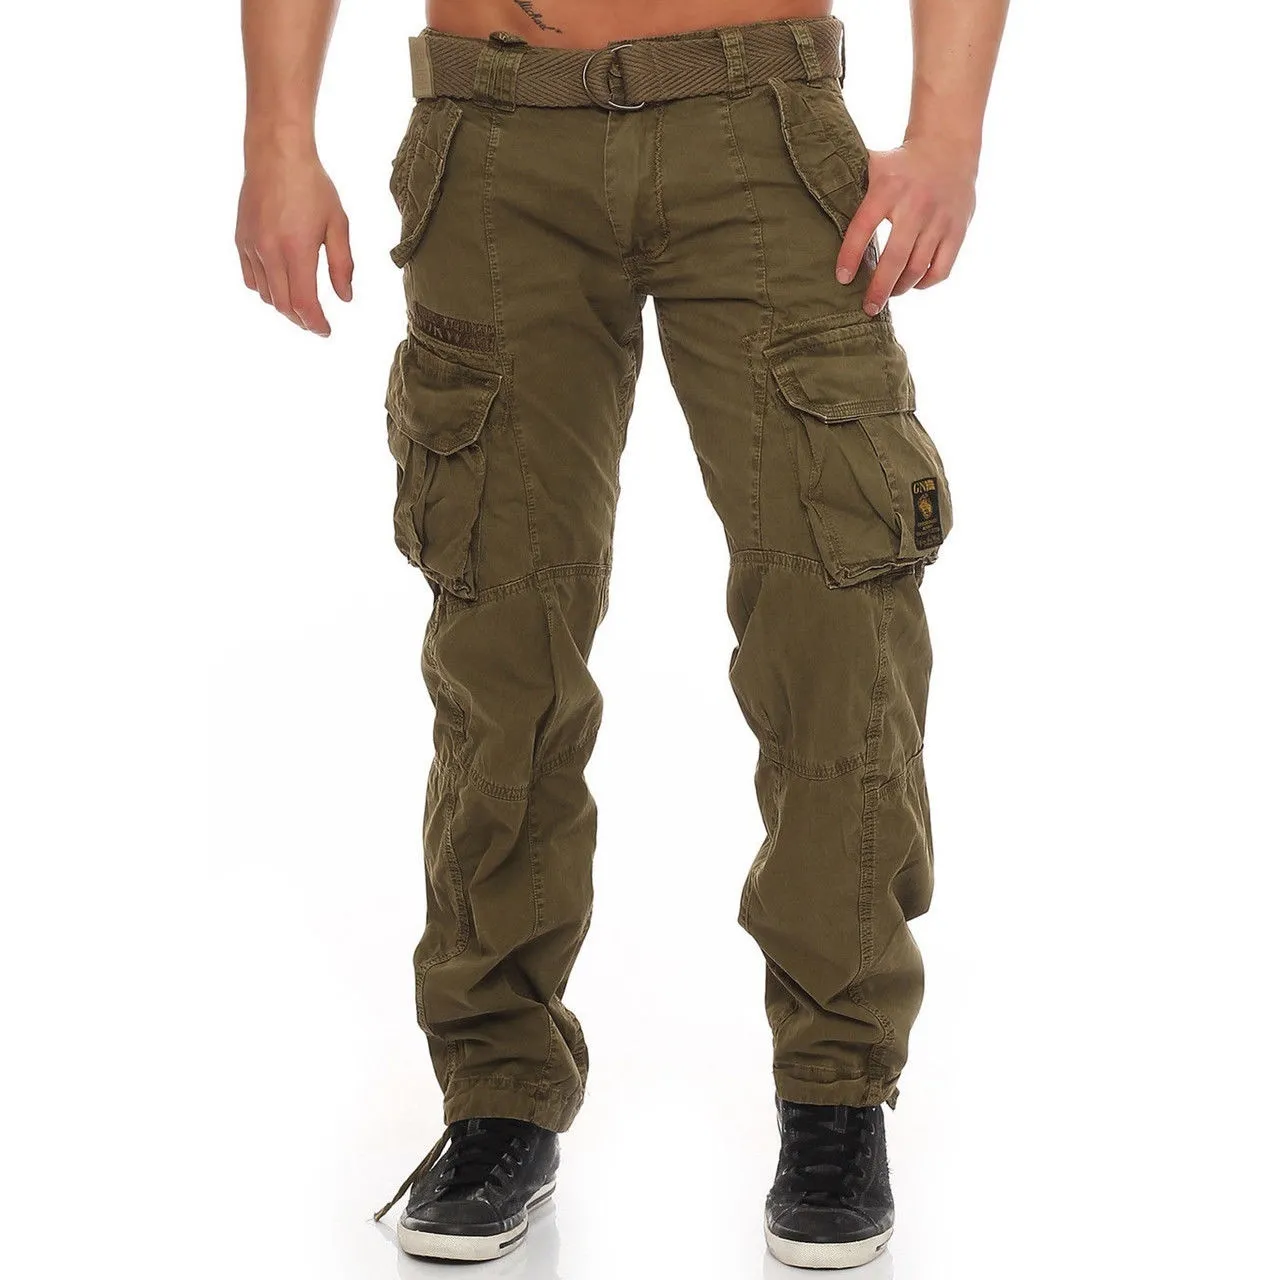 ZOGAA Tactique Pantalon Cargo Pant Hommes Combat SWAT Armée Pantalon Militaire Coton Multi Poches Stretch Flexible Homme Pantalon Décontracté 201128